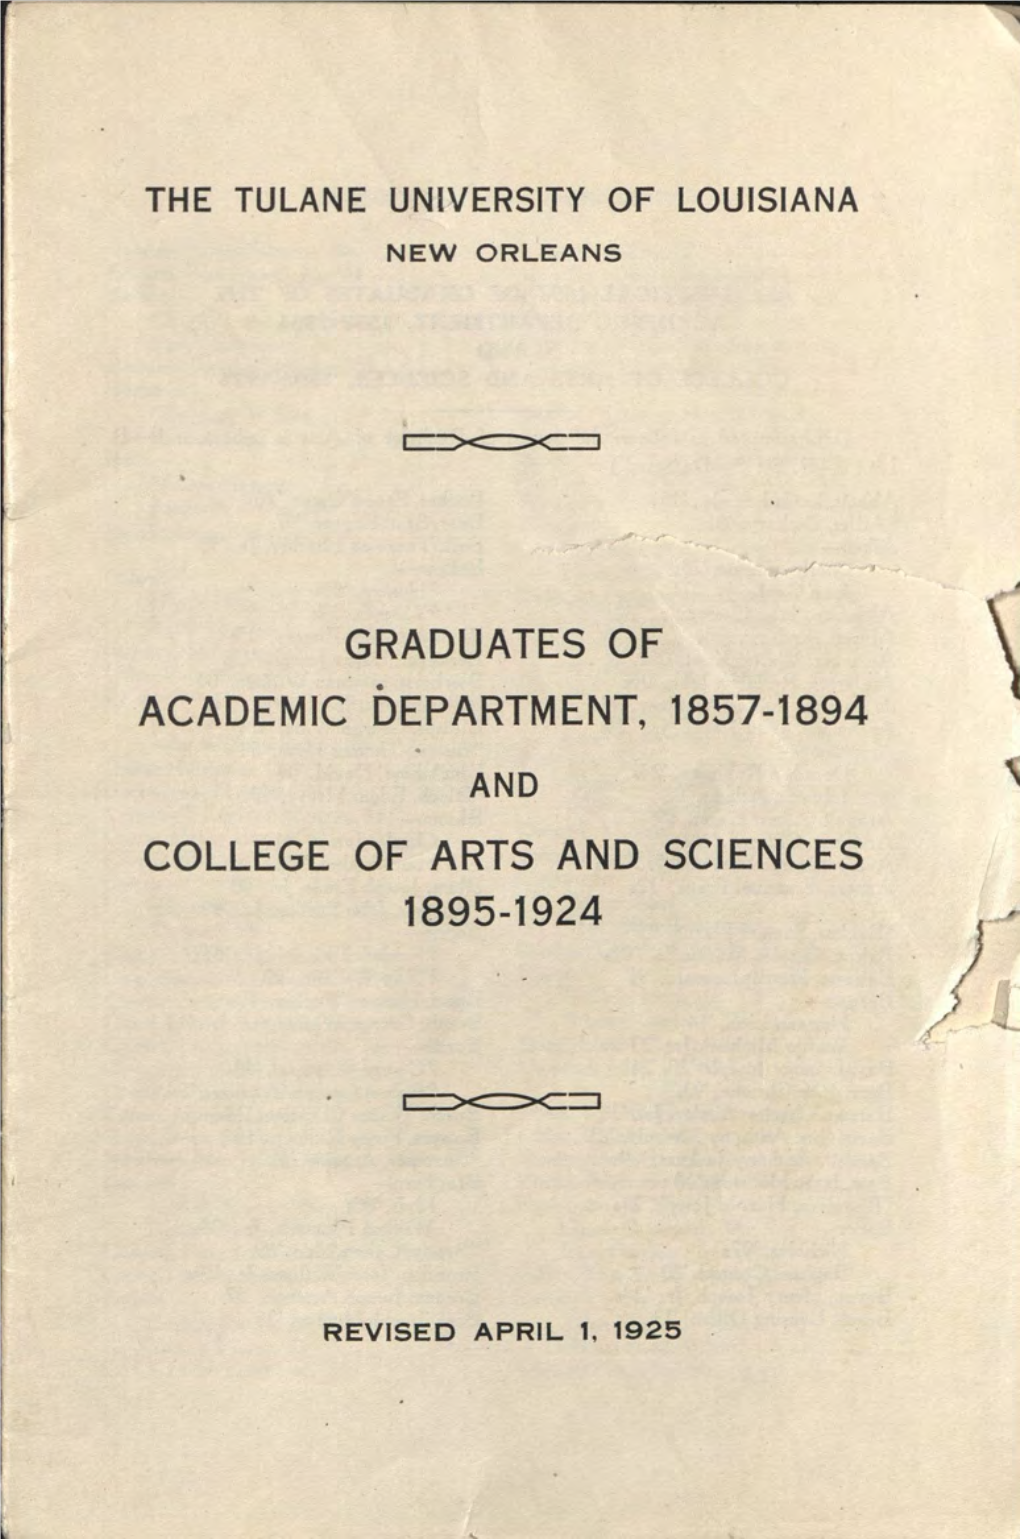 Graduates of Academic Department, 1857-1894